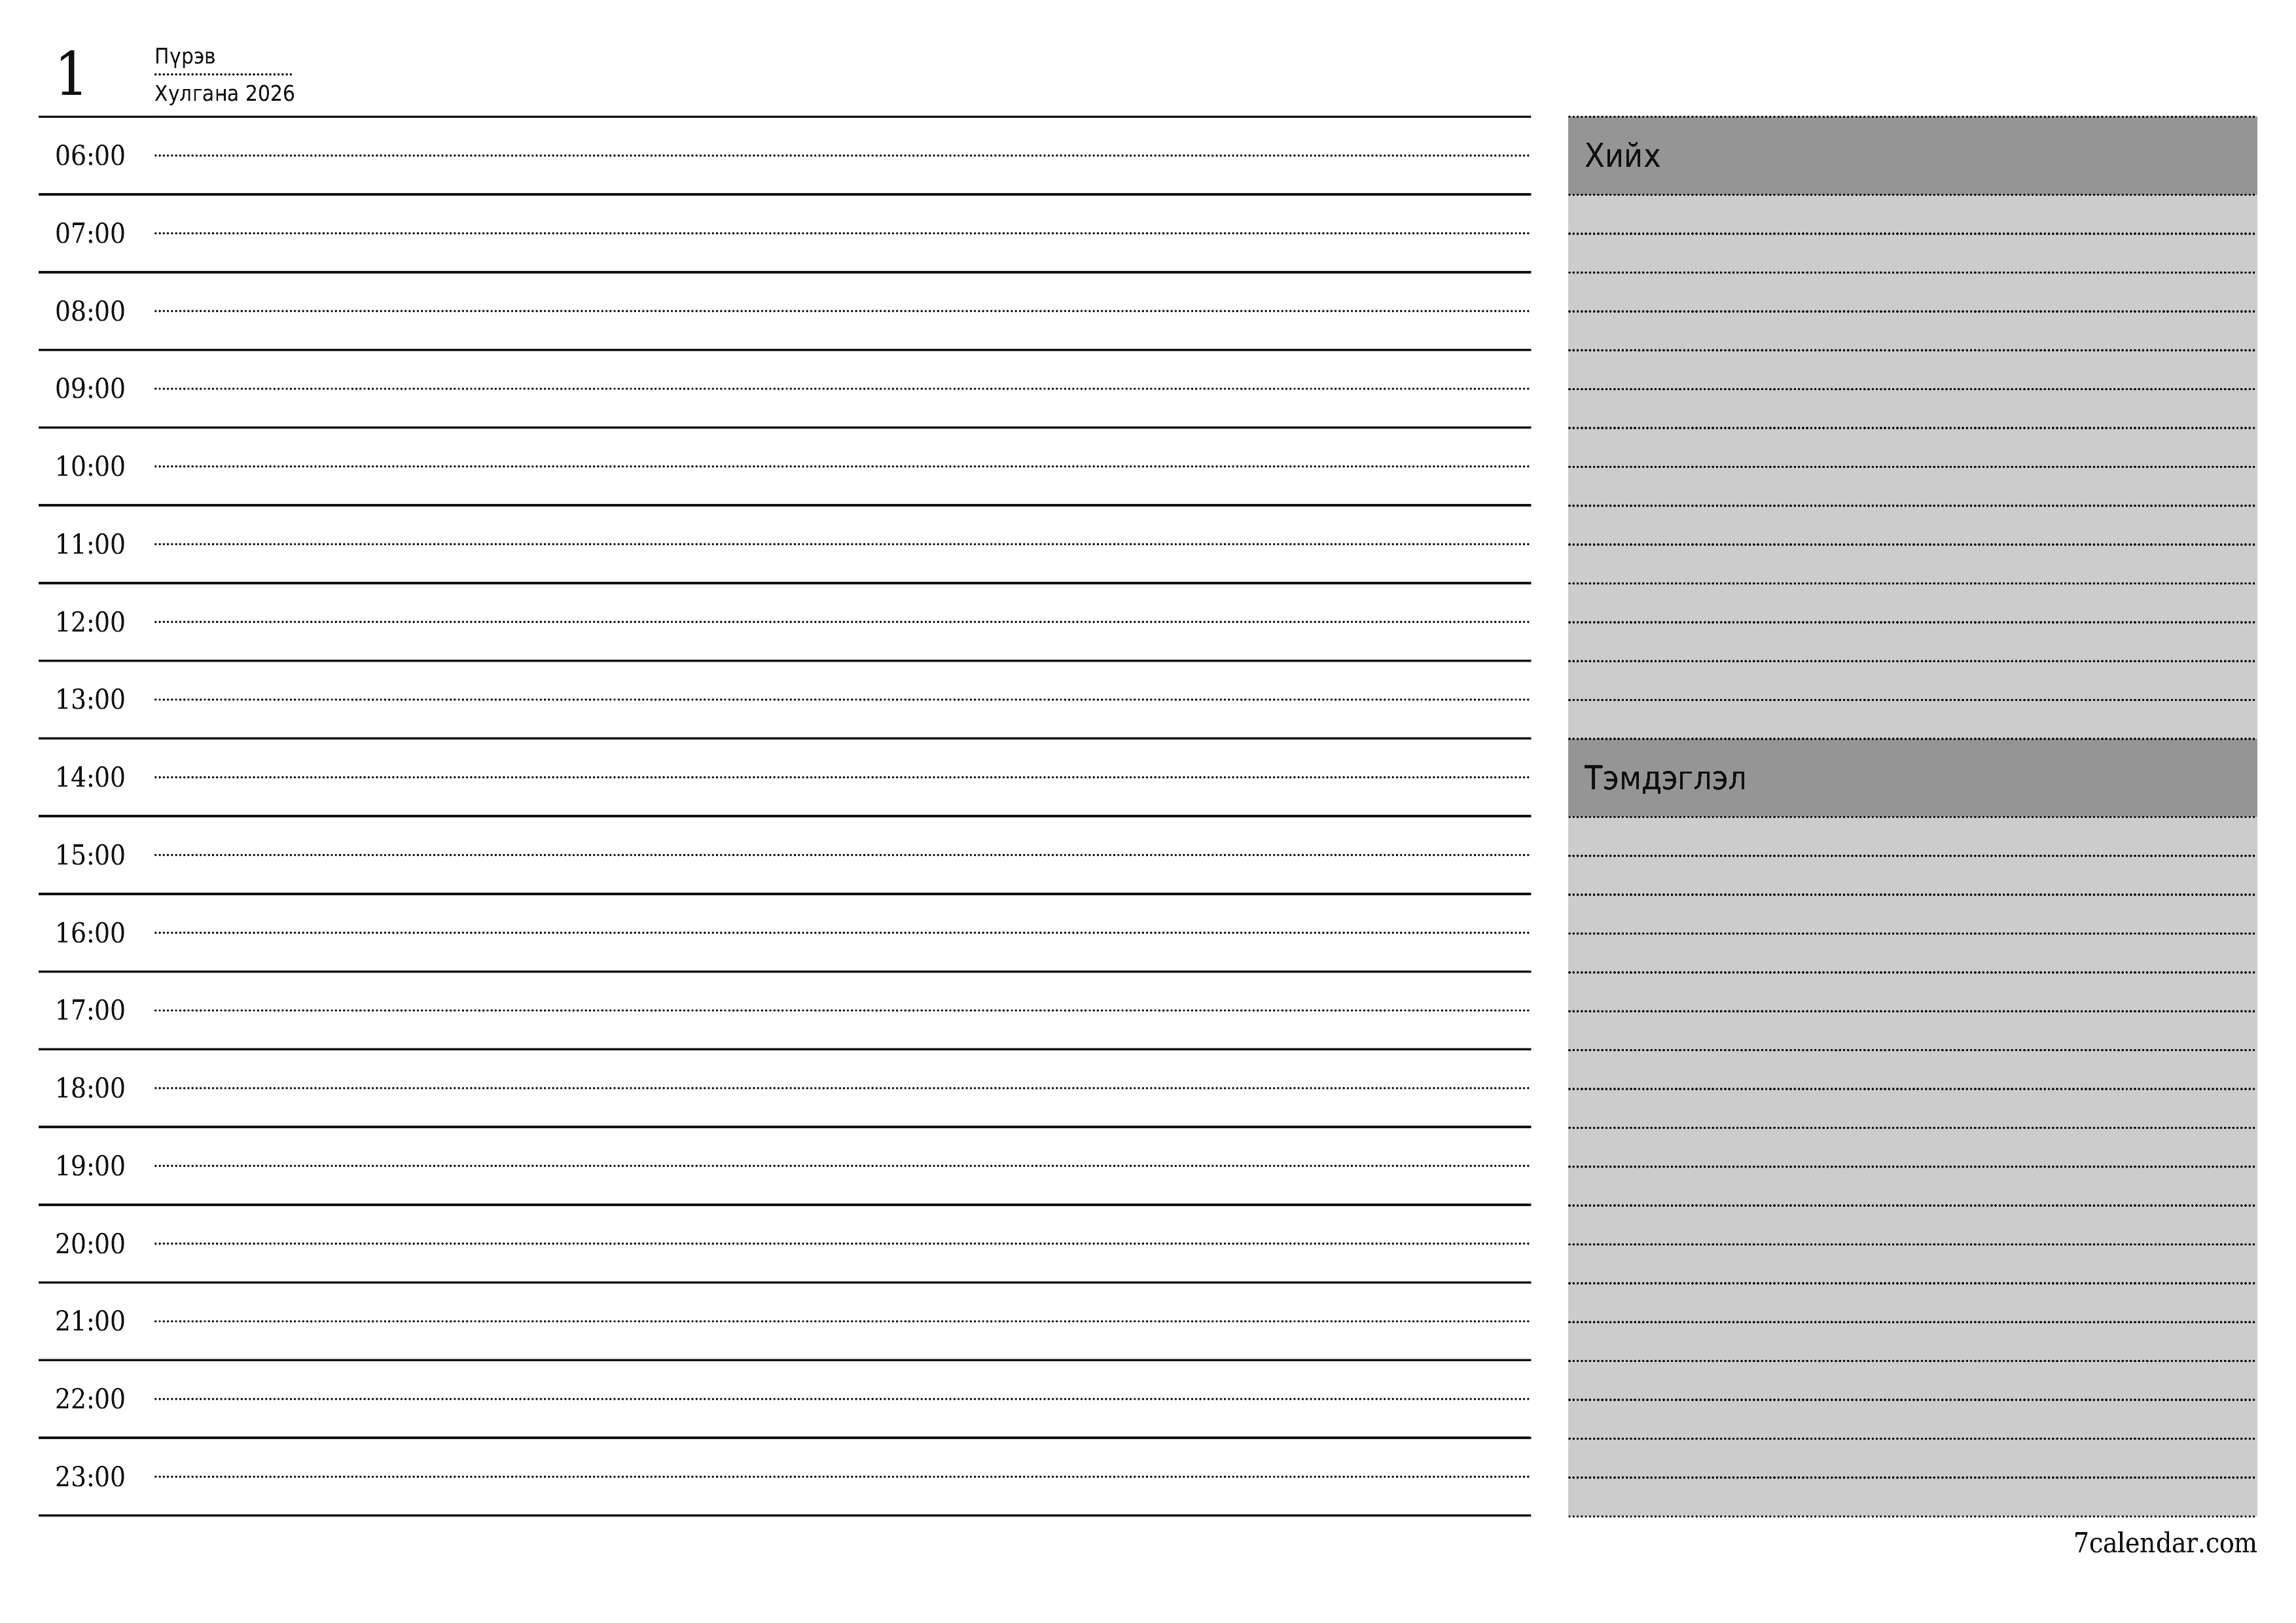 Өдөр тутмын төлөвлөгөөг Хулгана 2026 өдрийн тэмдэглэлтэй хамт хадгалж, PDF хэлбэрээр хадгалж, хэвлэ PNG Mongolian